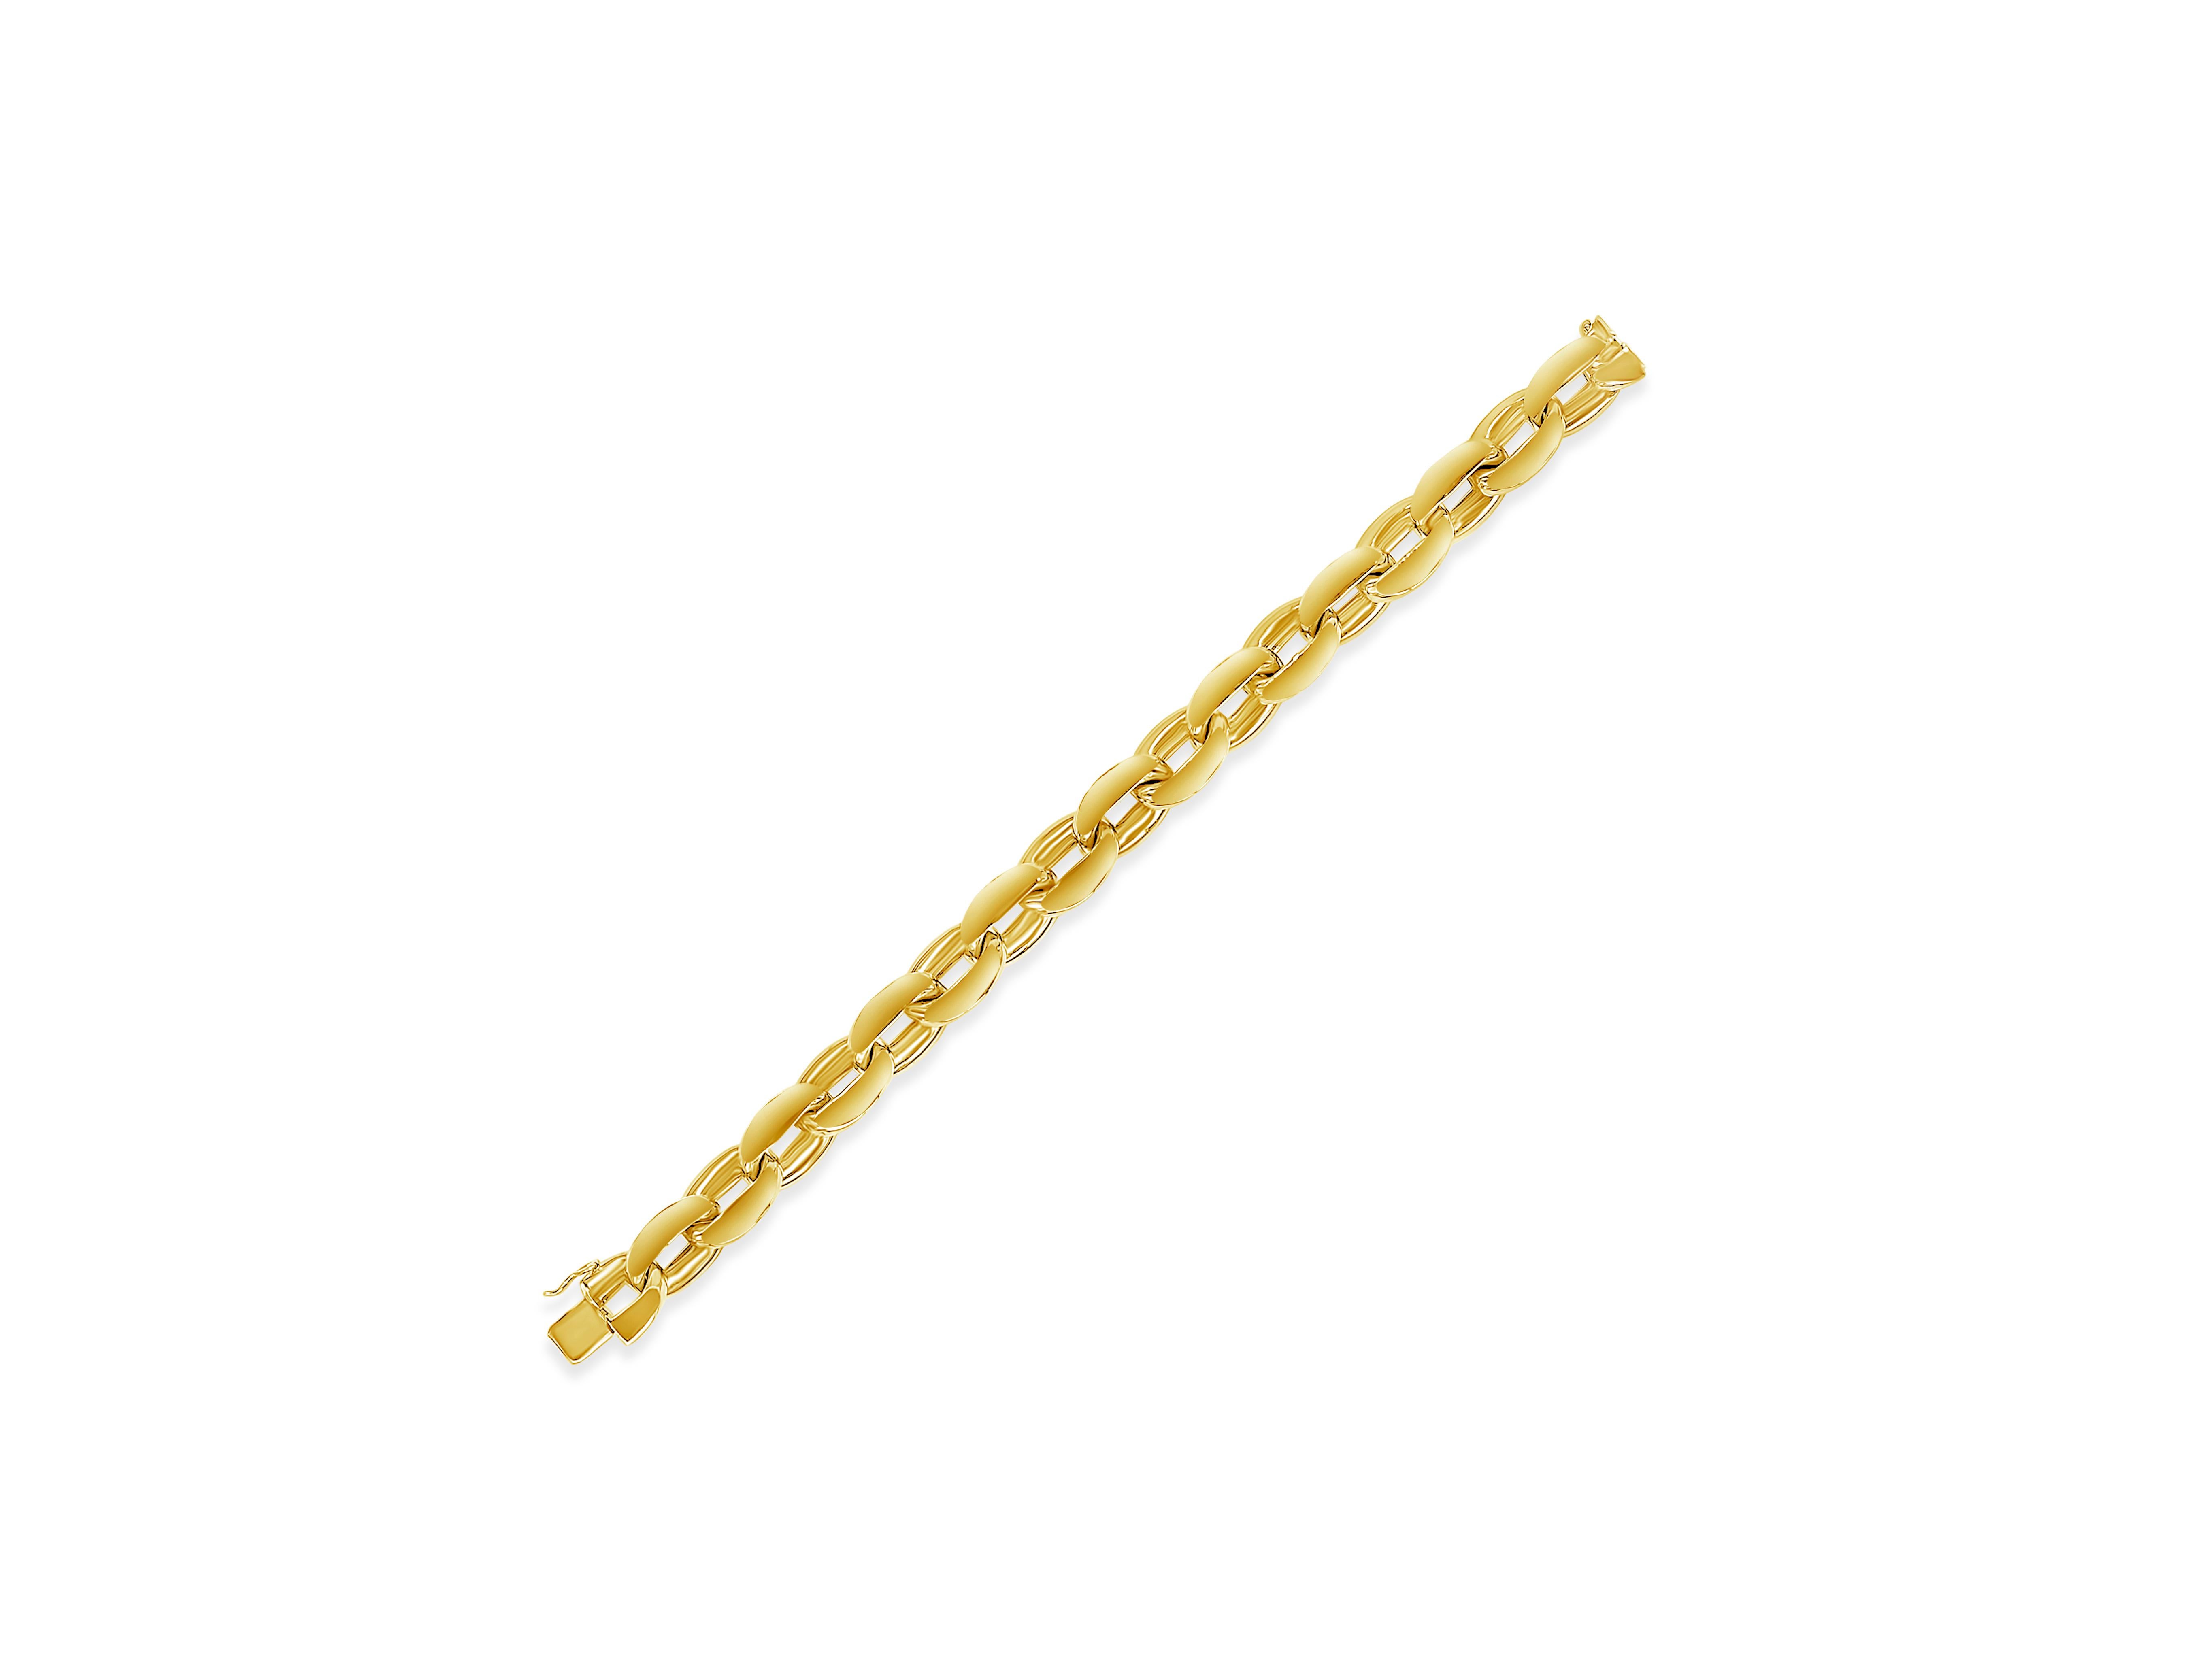 Ein klassisches und individuelles Armband mit großen ovalen Gliedern aus massivem 18 Karat Gelbgold. Der Armreif wiegt 35.87 Gramm. Ungefähr 8,5 Zoll in der Länge.